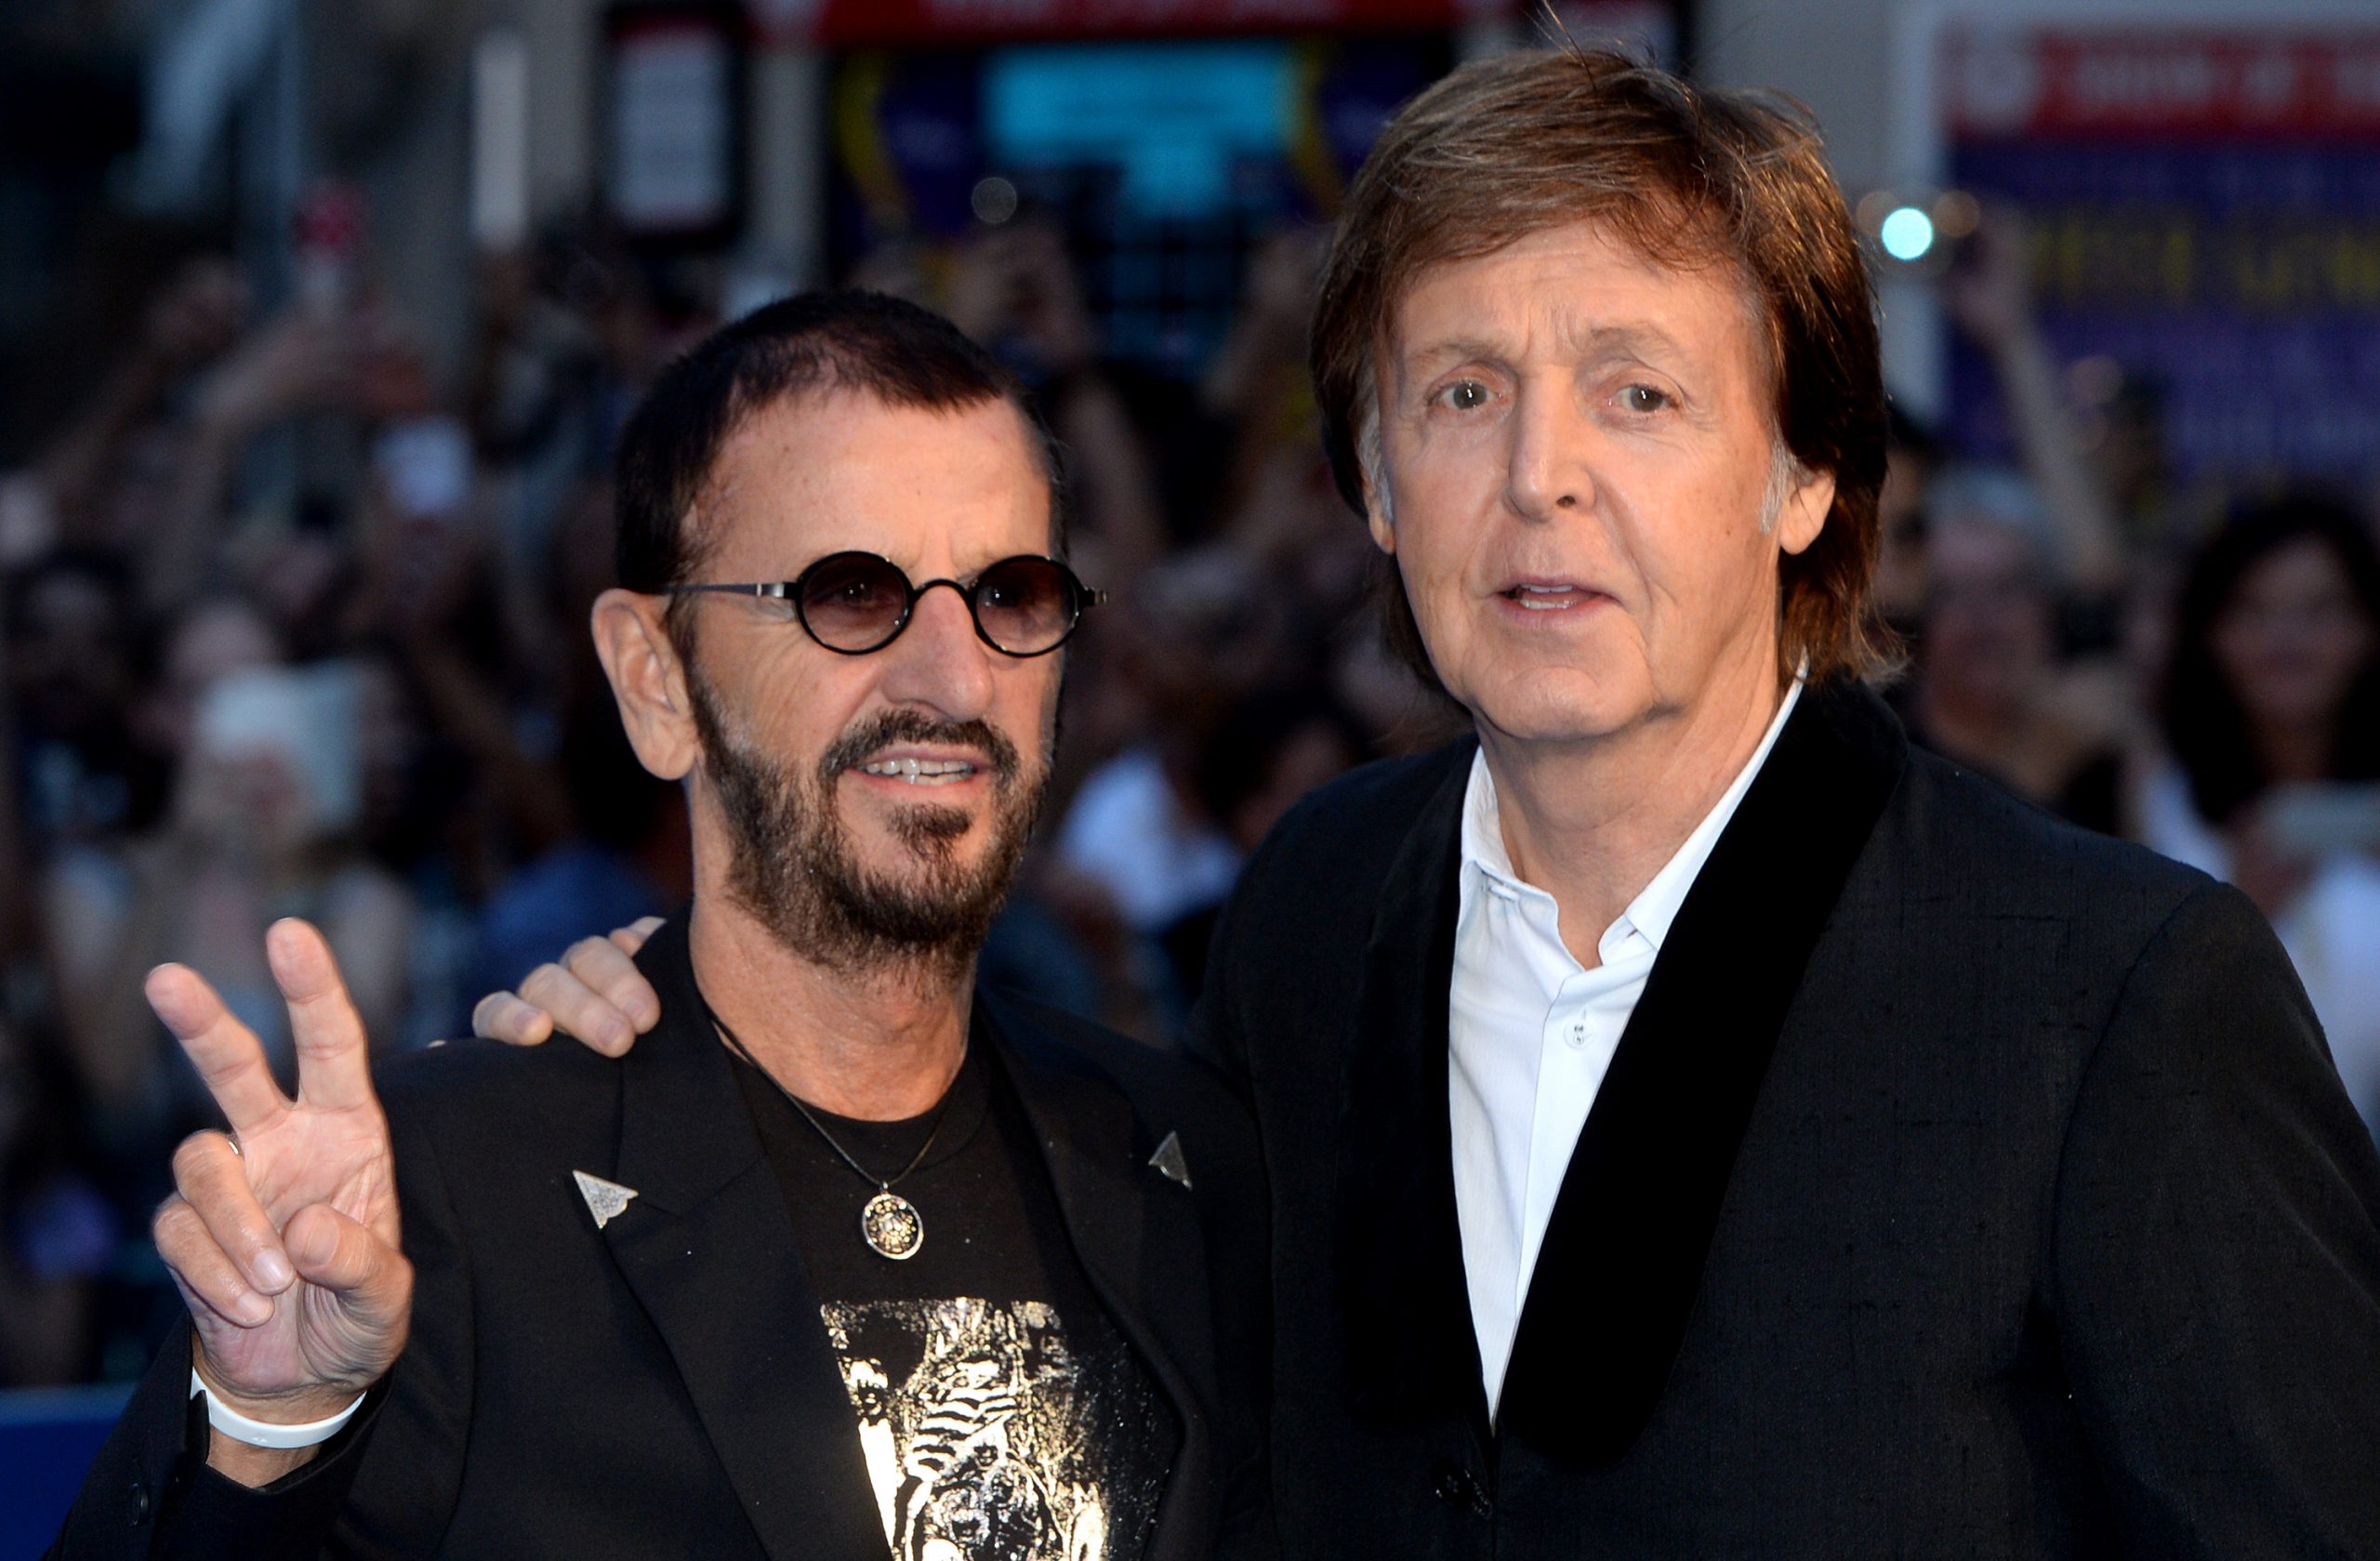 Ringo Starr celebra sus 80 años con un concierto virtual junto a Paul McCartney